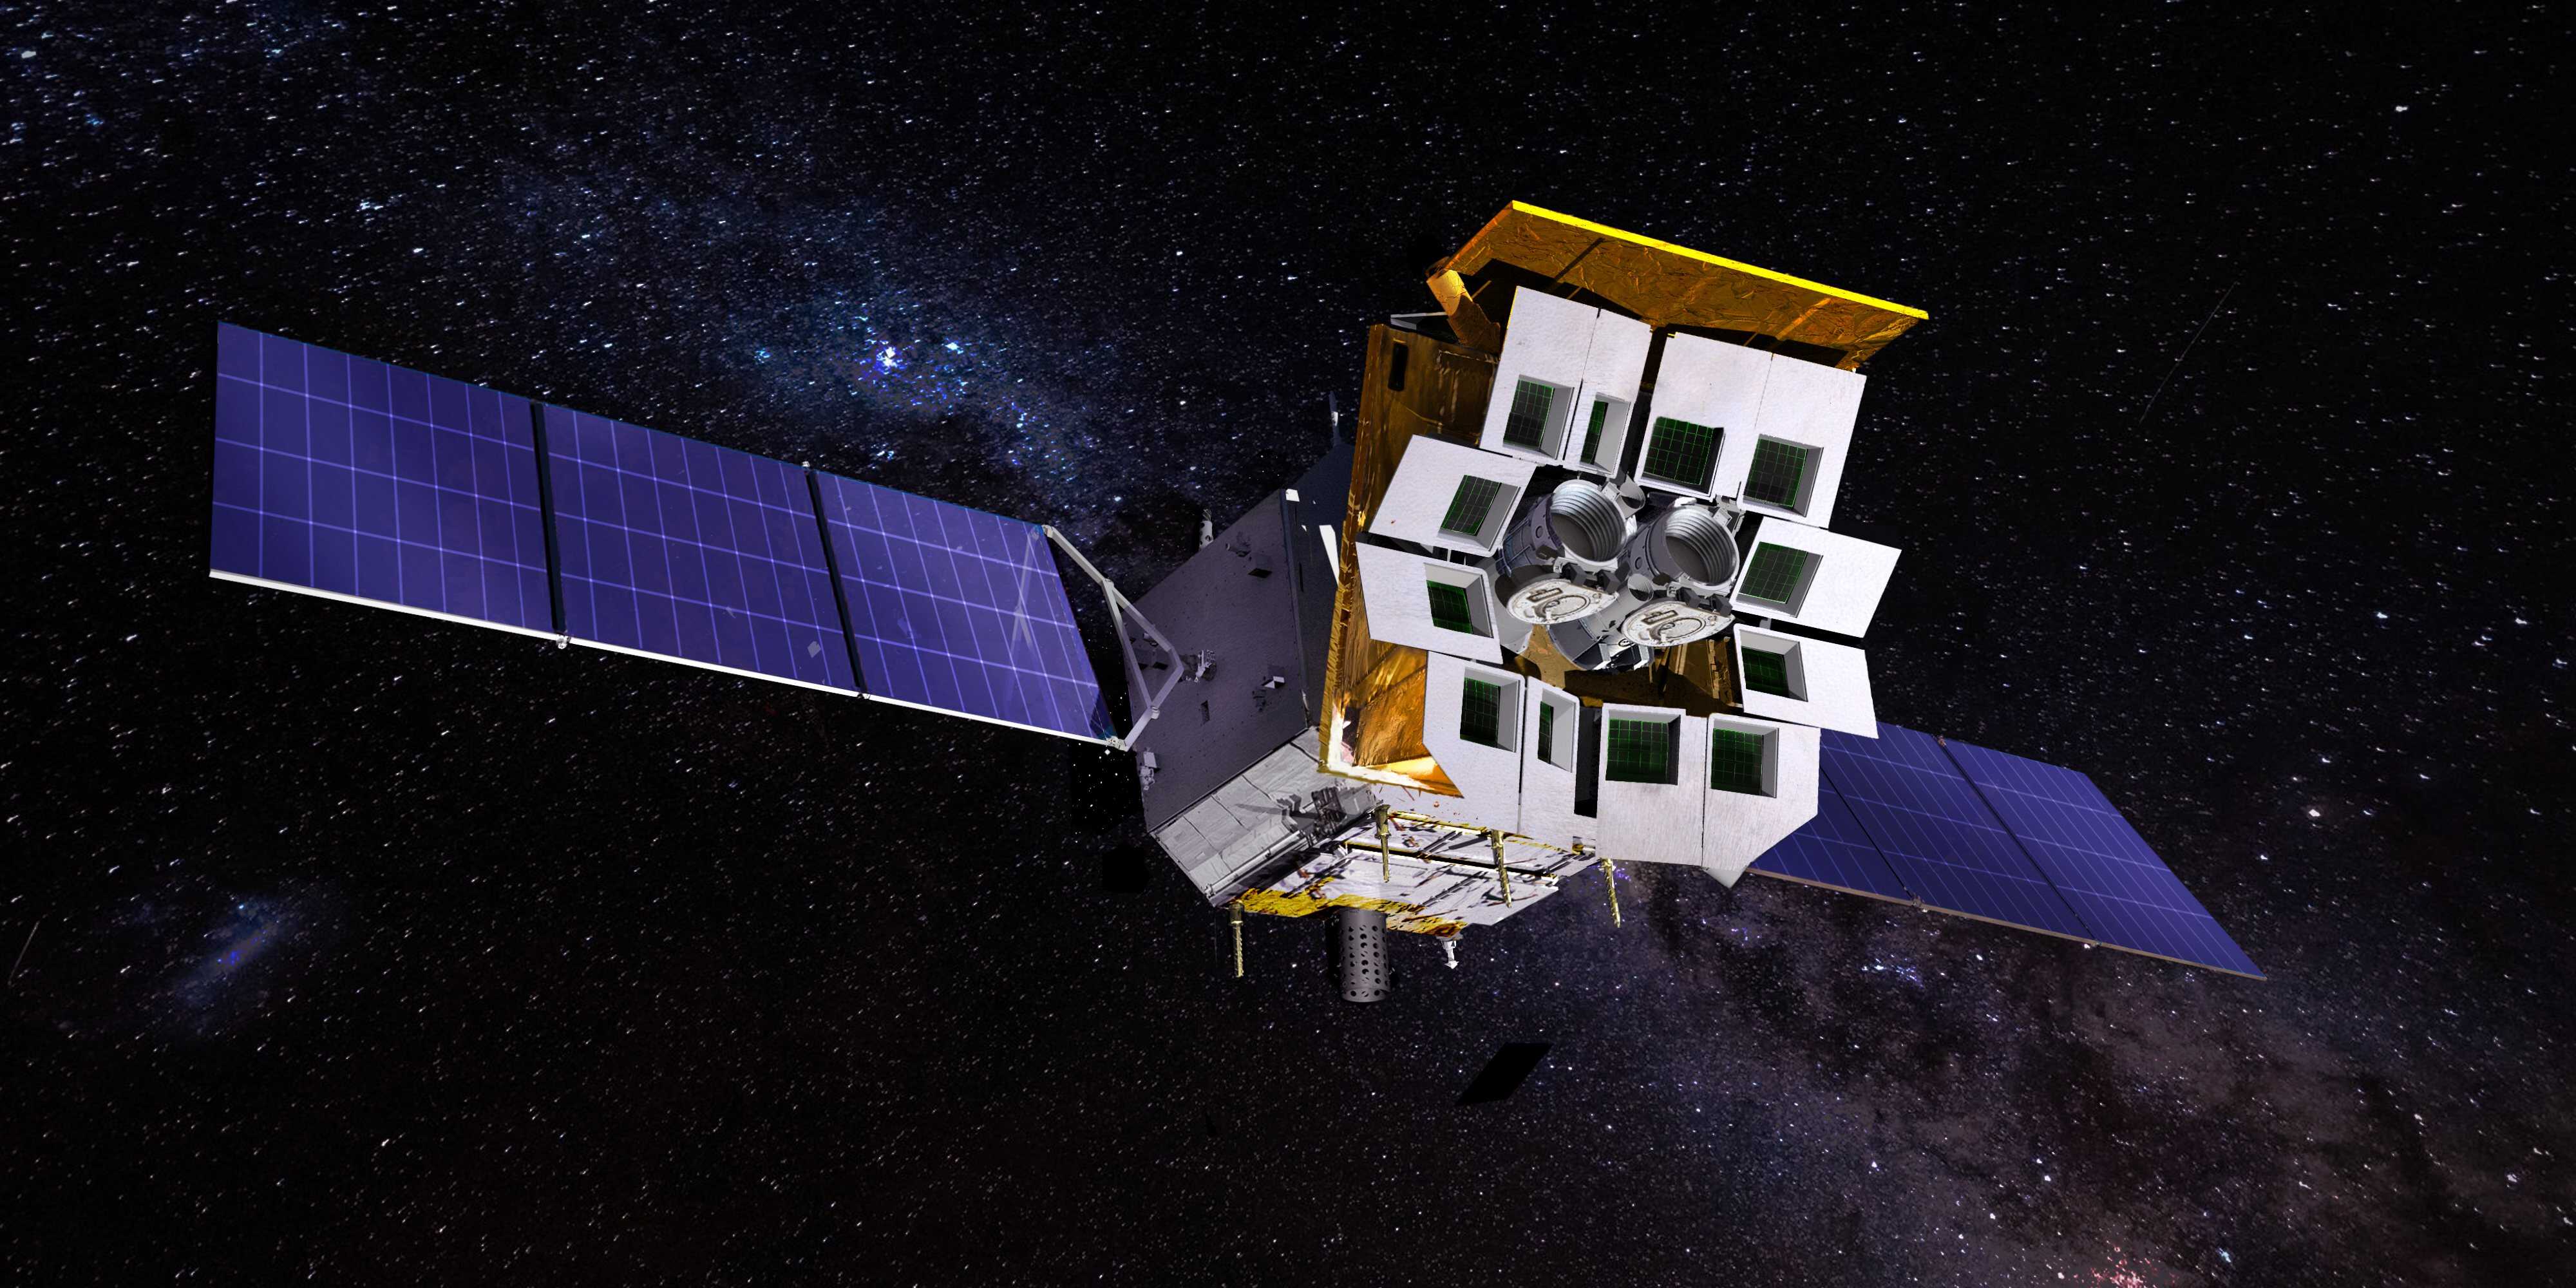 国产化空间永磁电子偏转器成功搭载爱因斯坦探针卫星助力巡天监测